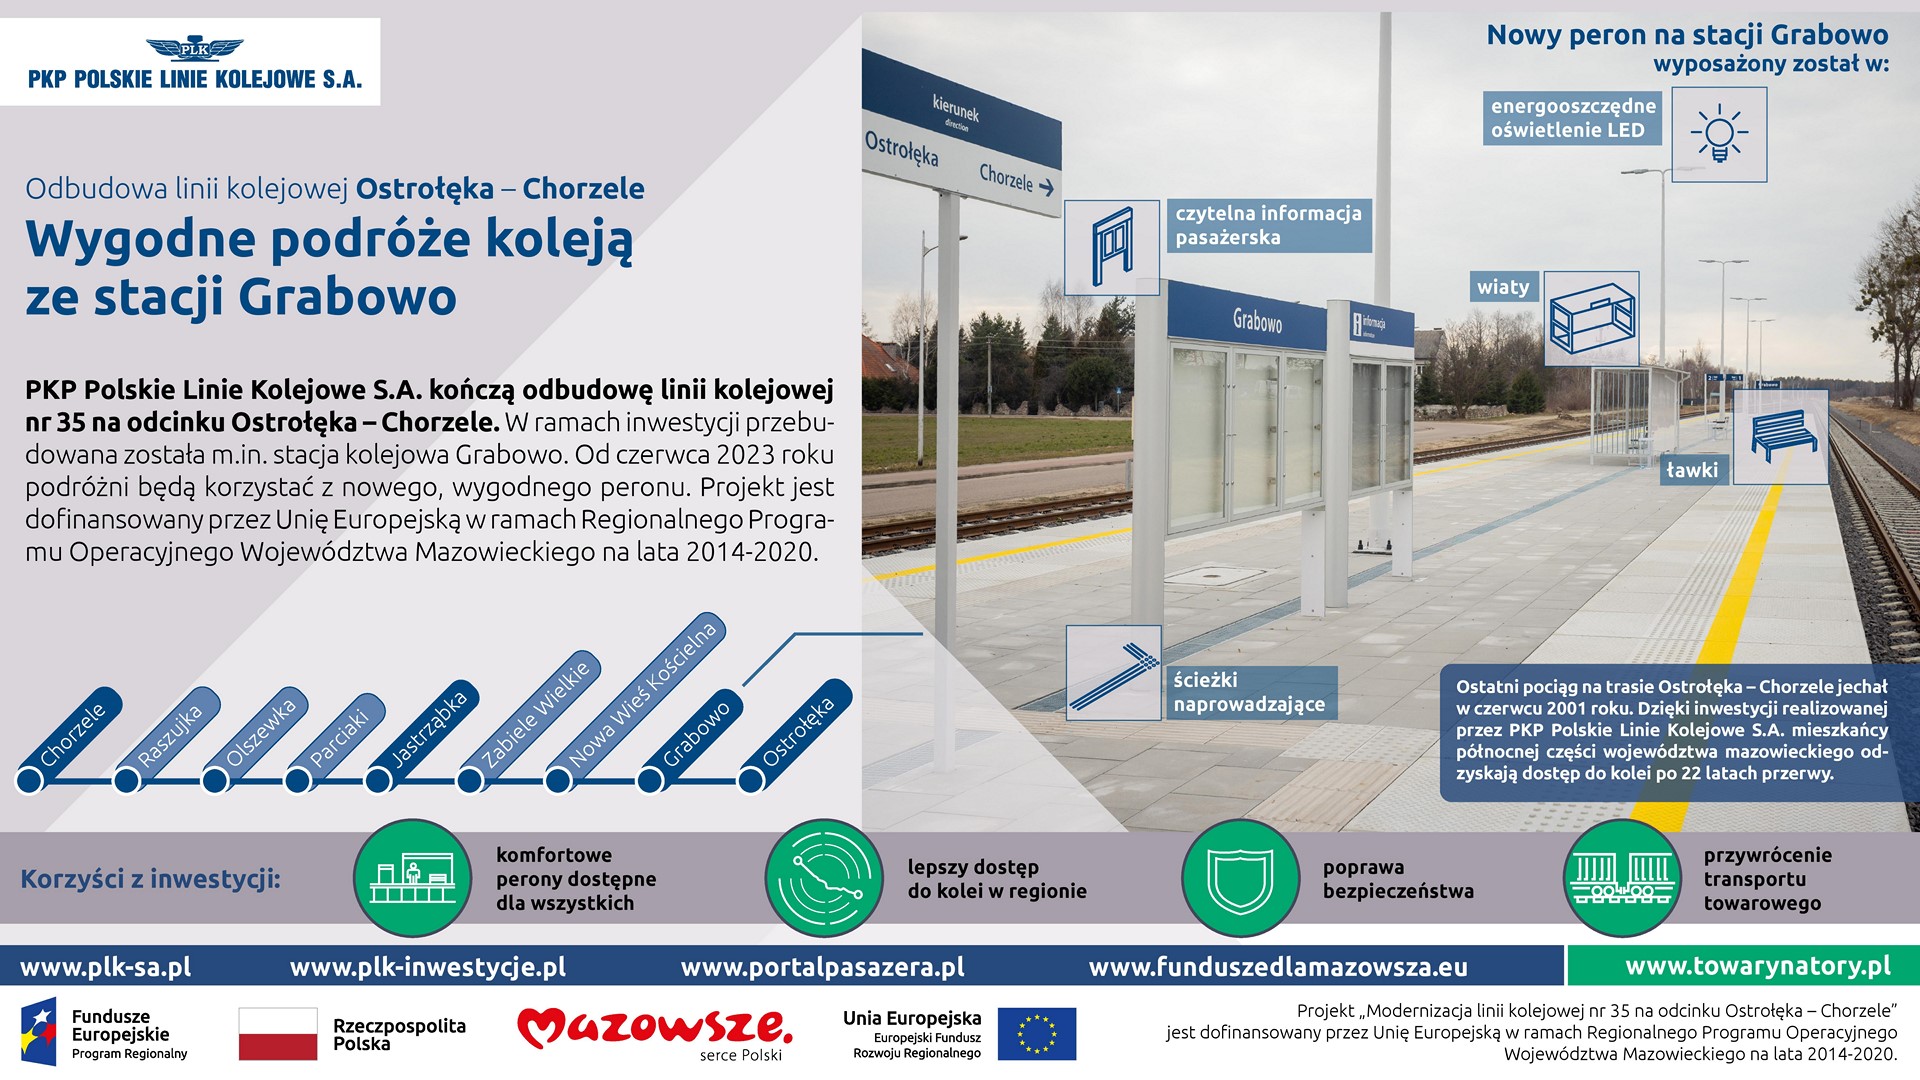 Infografika mówi o zmianach na stacji w Grabowie.